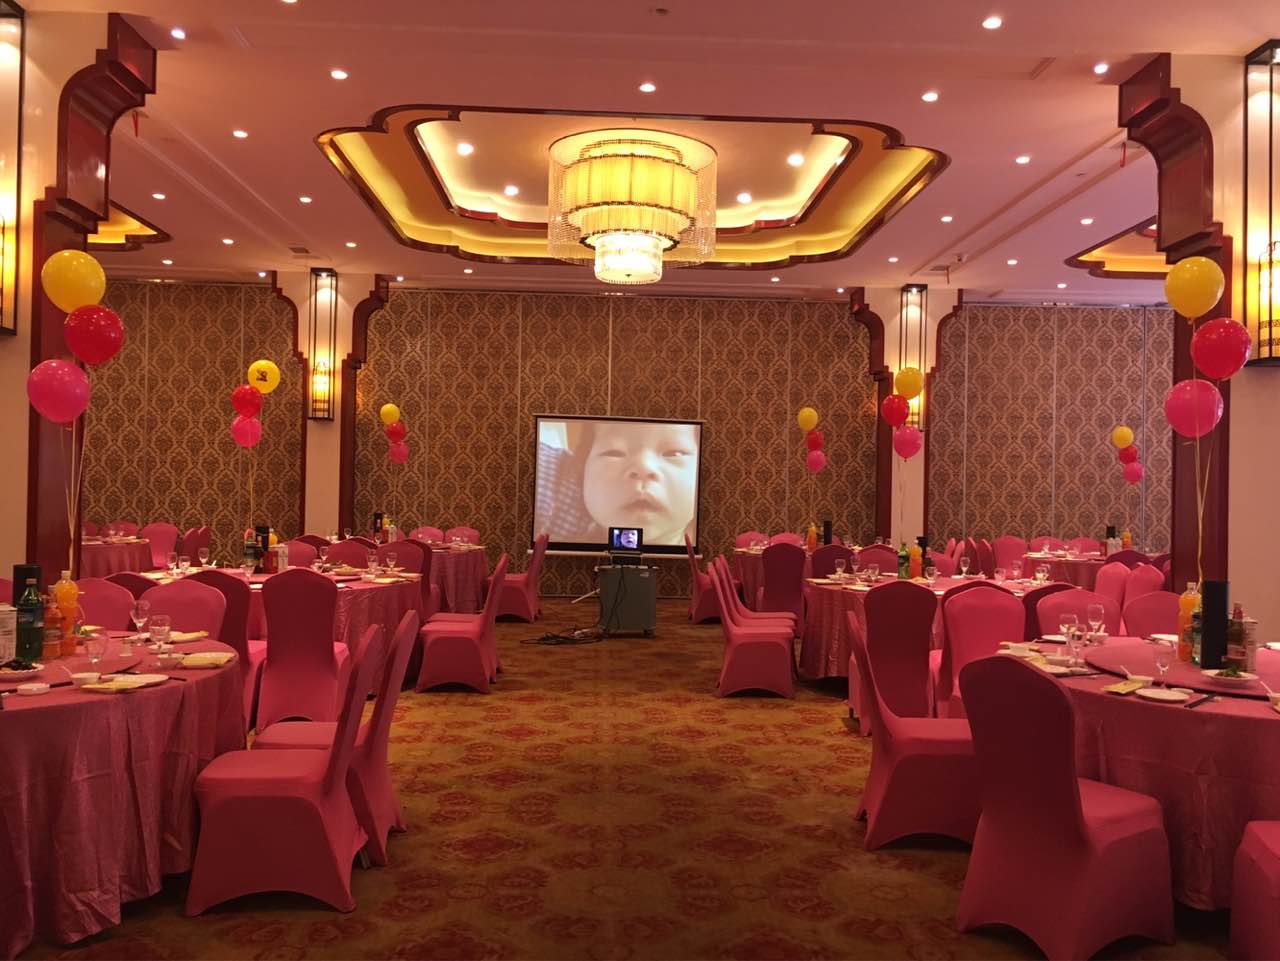 宁波石浦大酒店婚宴图片